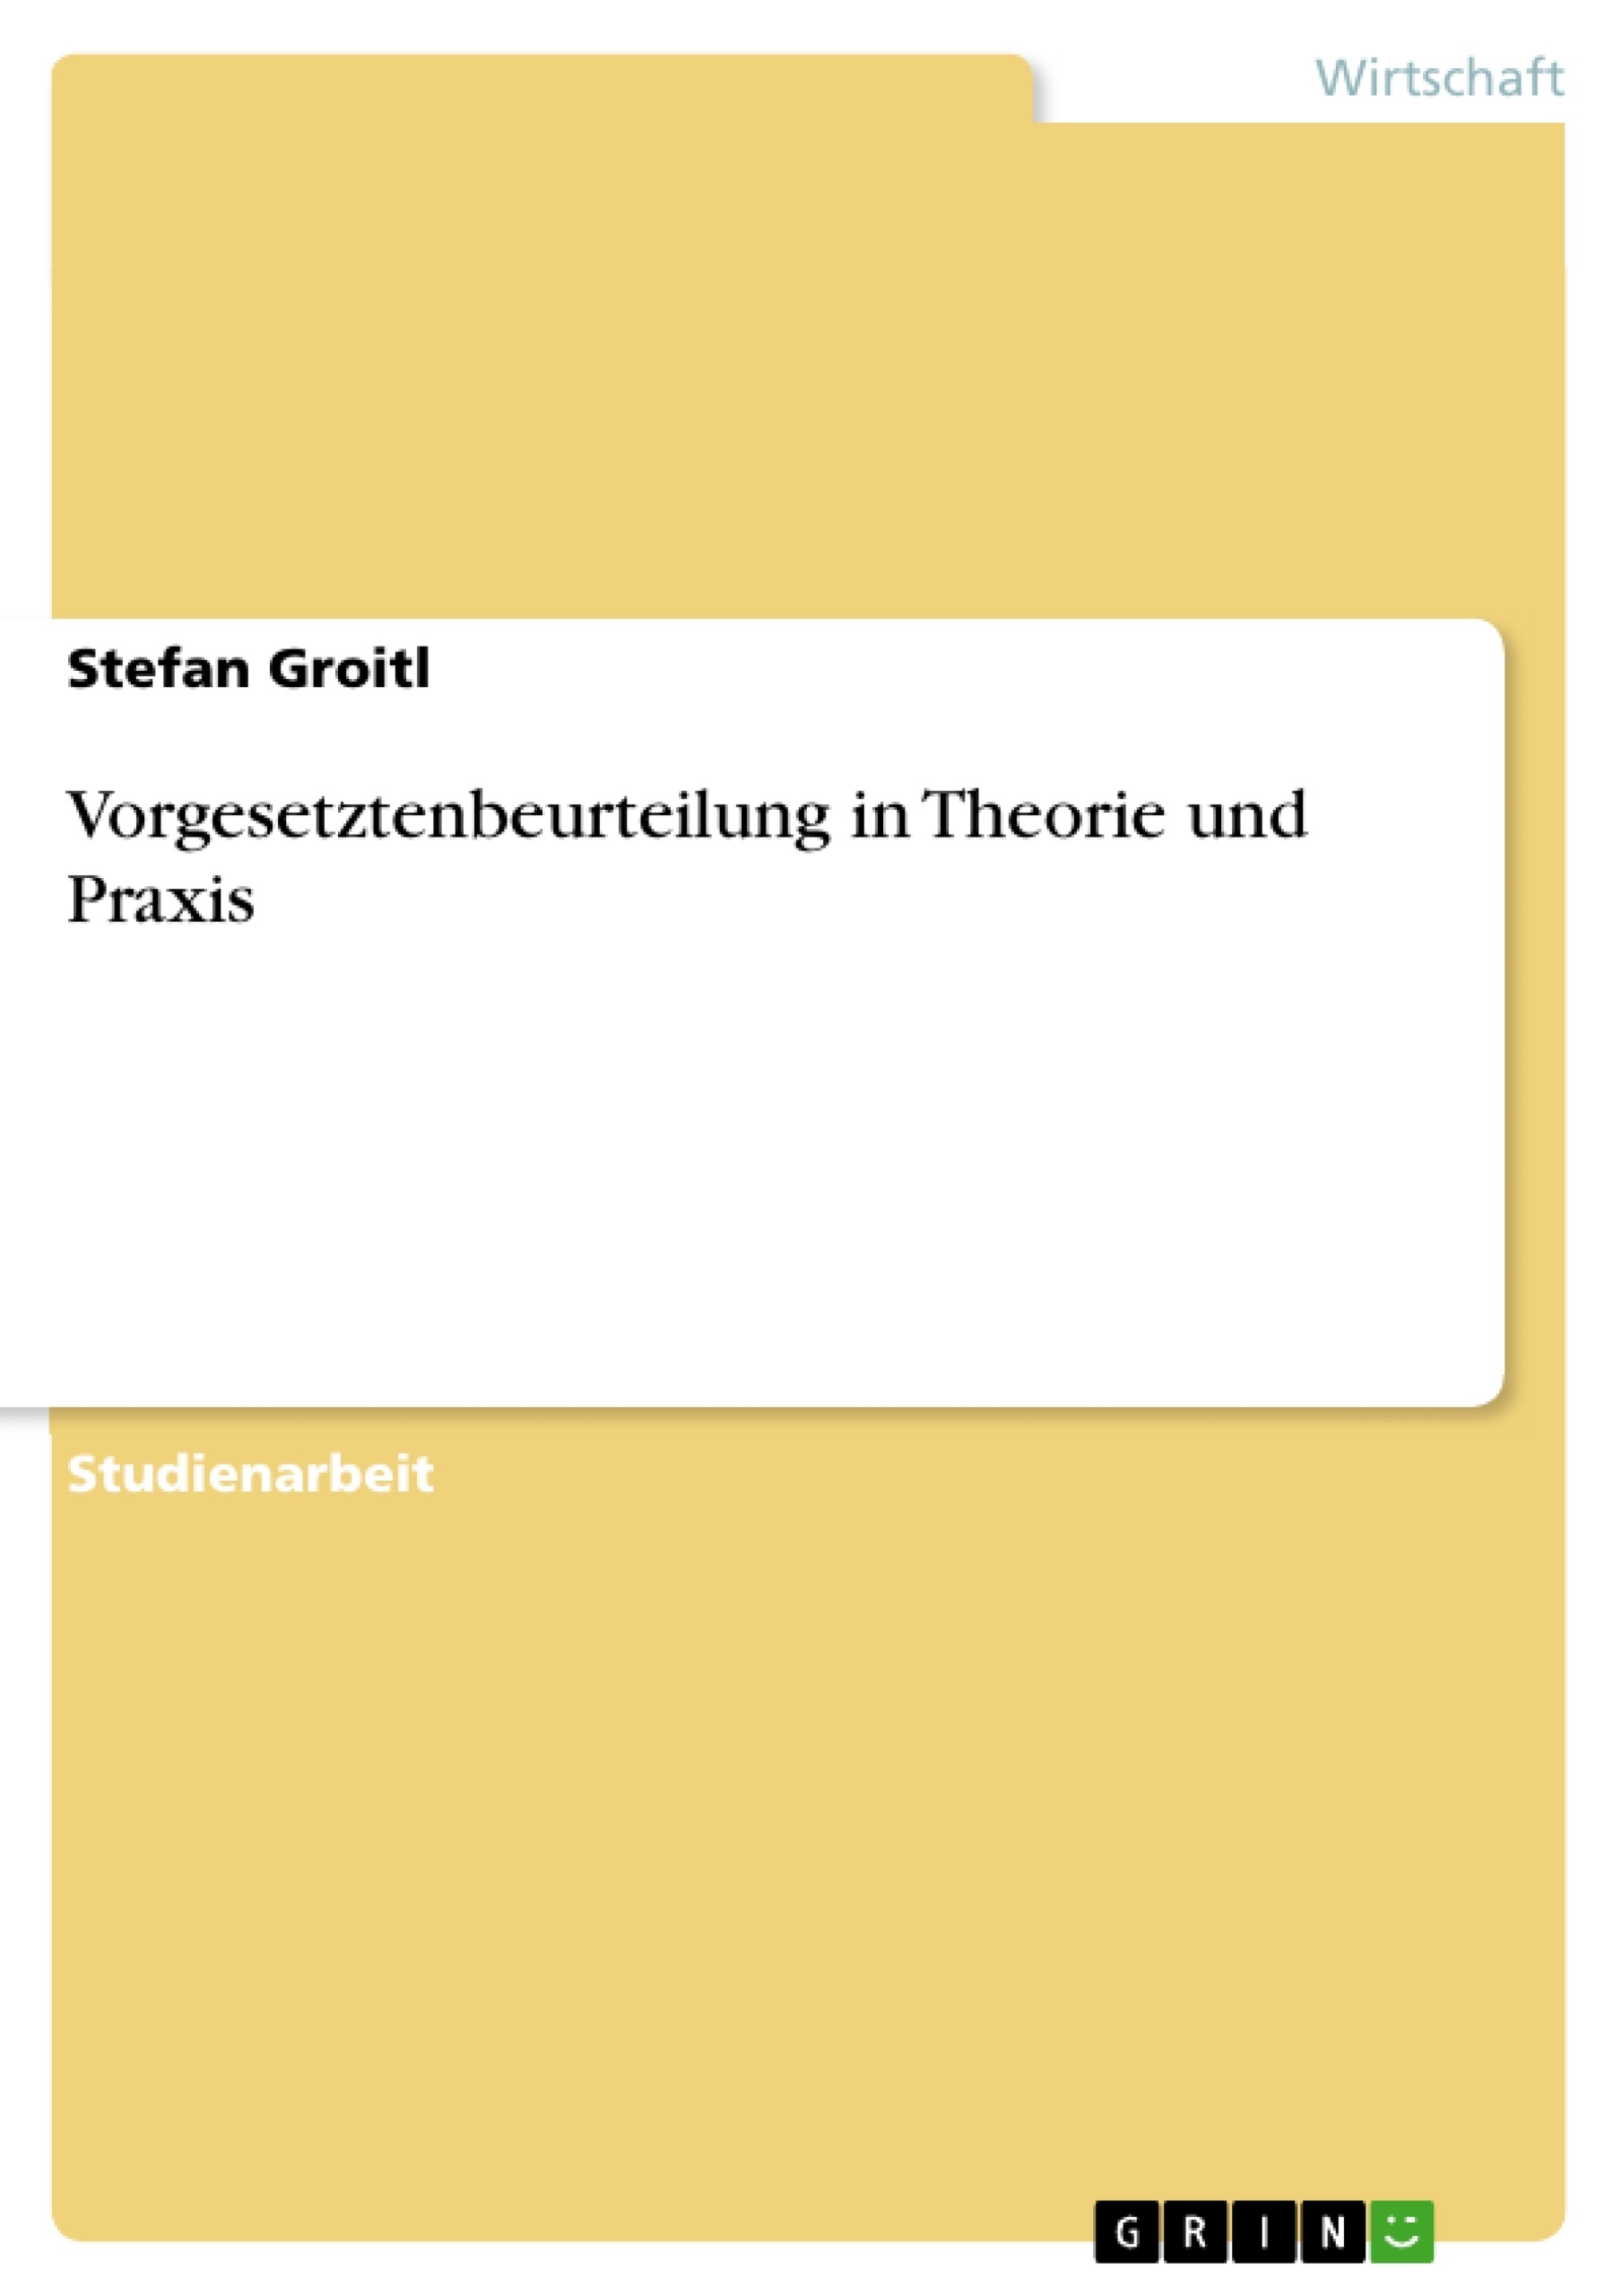 Título: Vorgesetztenbeurteilung in Theorie und Praxis